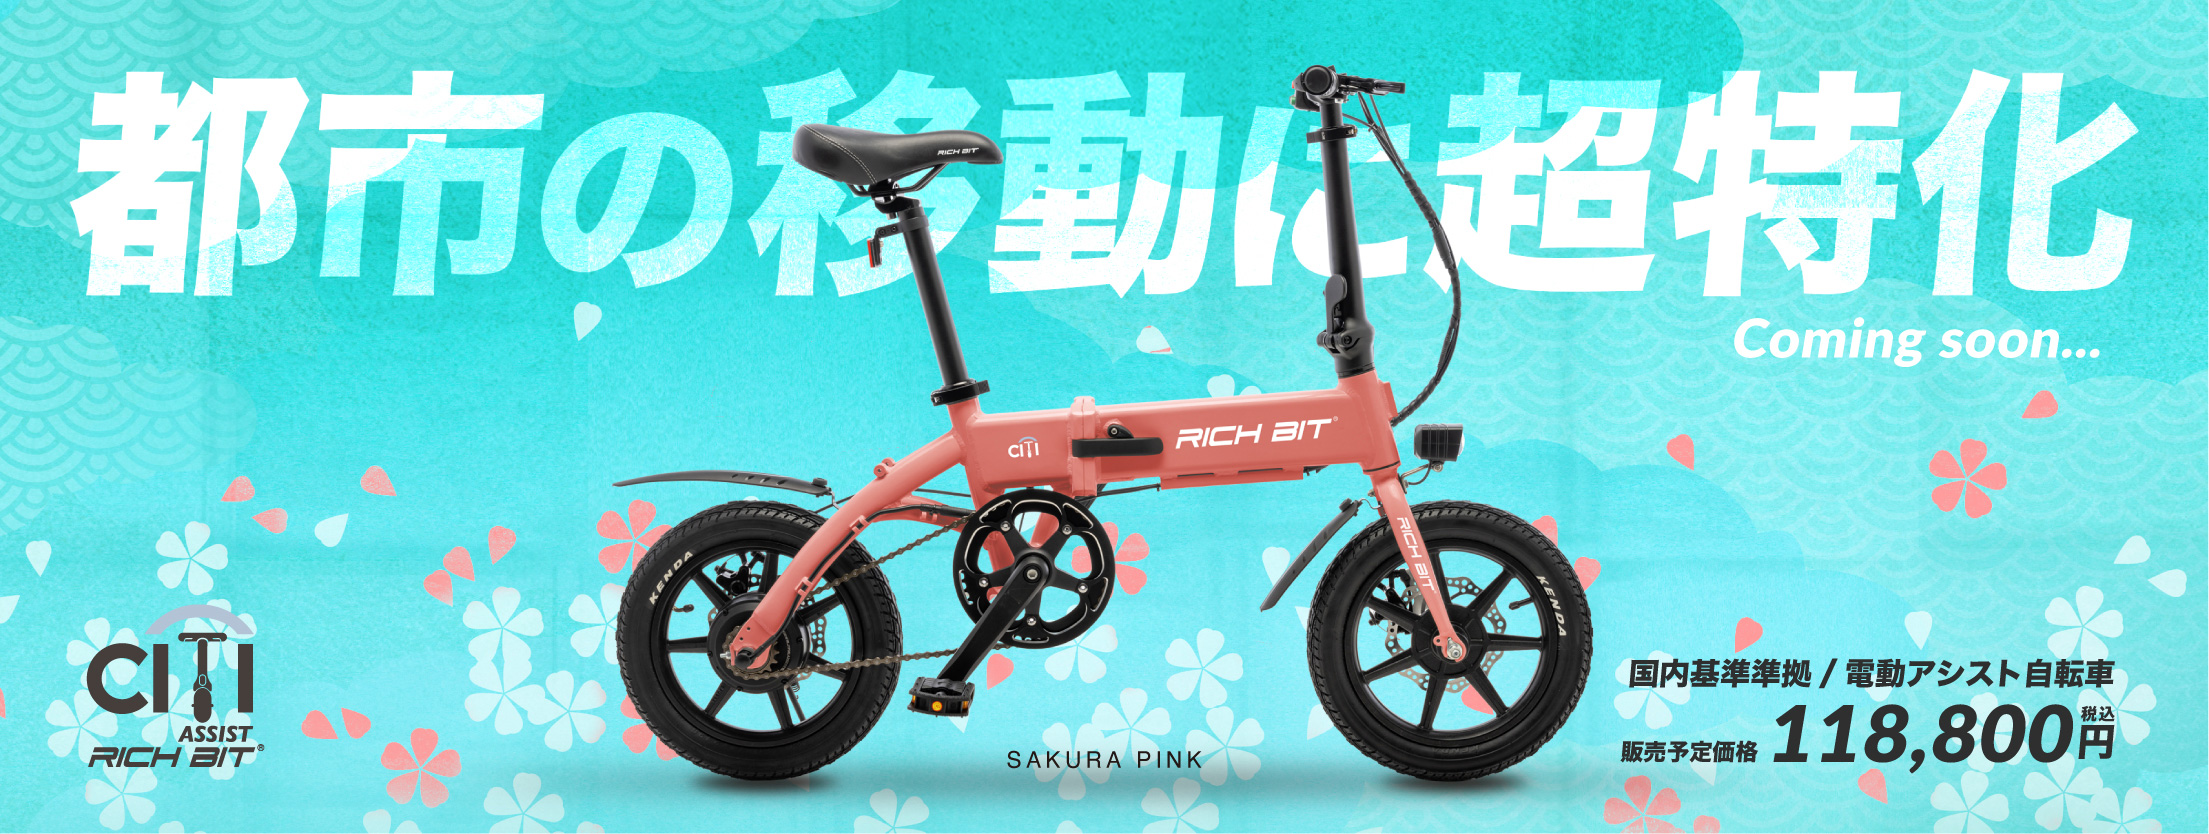 特定小型原付モデル&電動アシスト自転車モデル「RICHBIT CITY」近日 